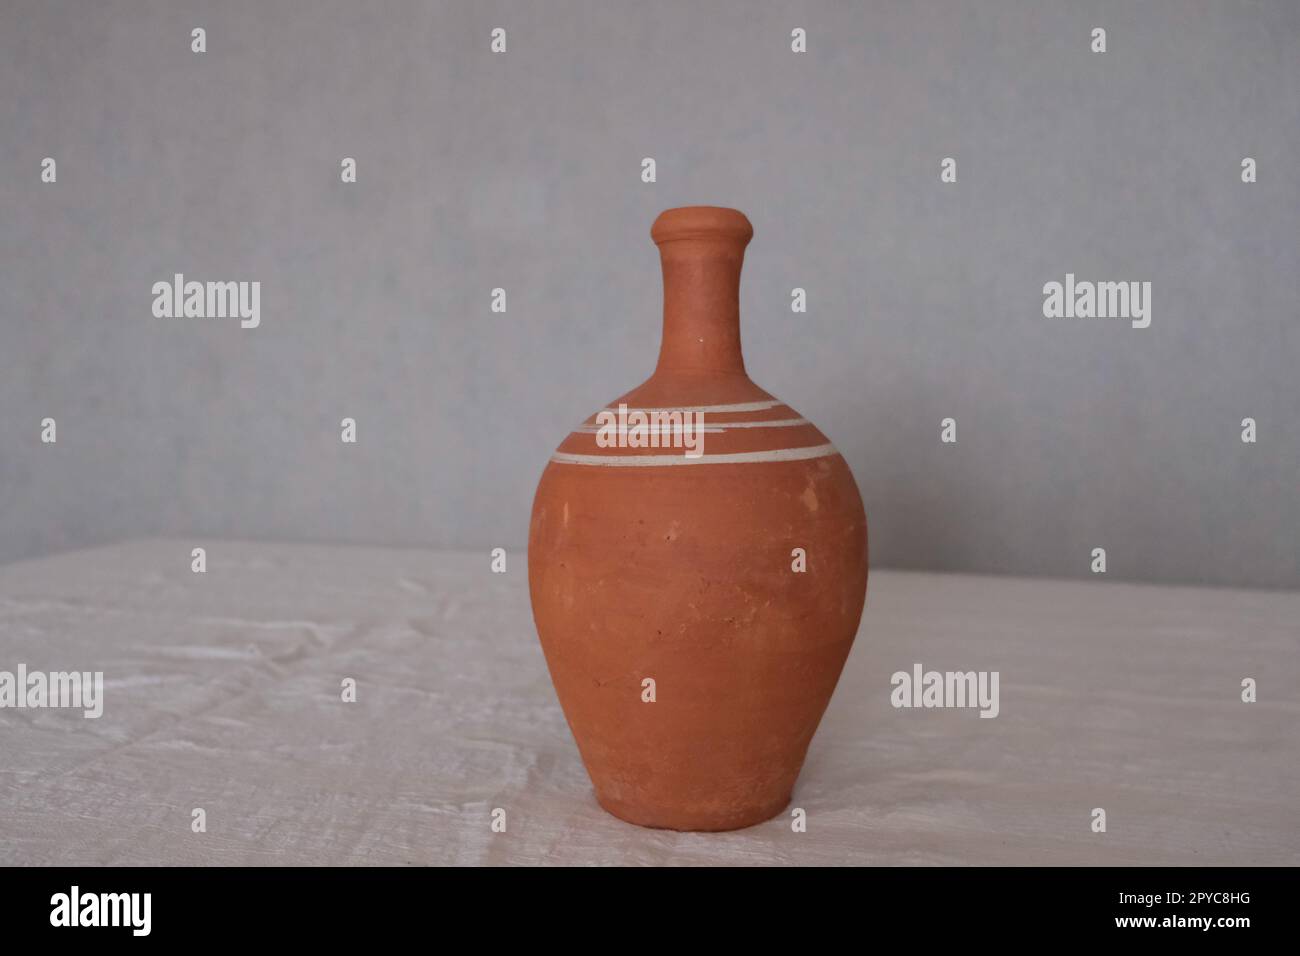 Vorderansicht eines alten unlackierten antiken Keramikkastens auf einer weißen Tischdecke. Tonkrug zum Trinken von Wein oder Wasser. Stockfoto